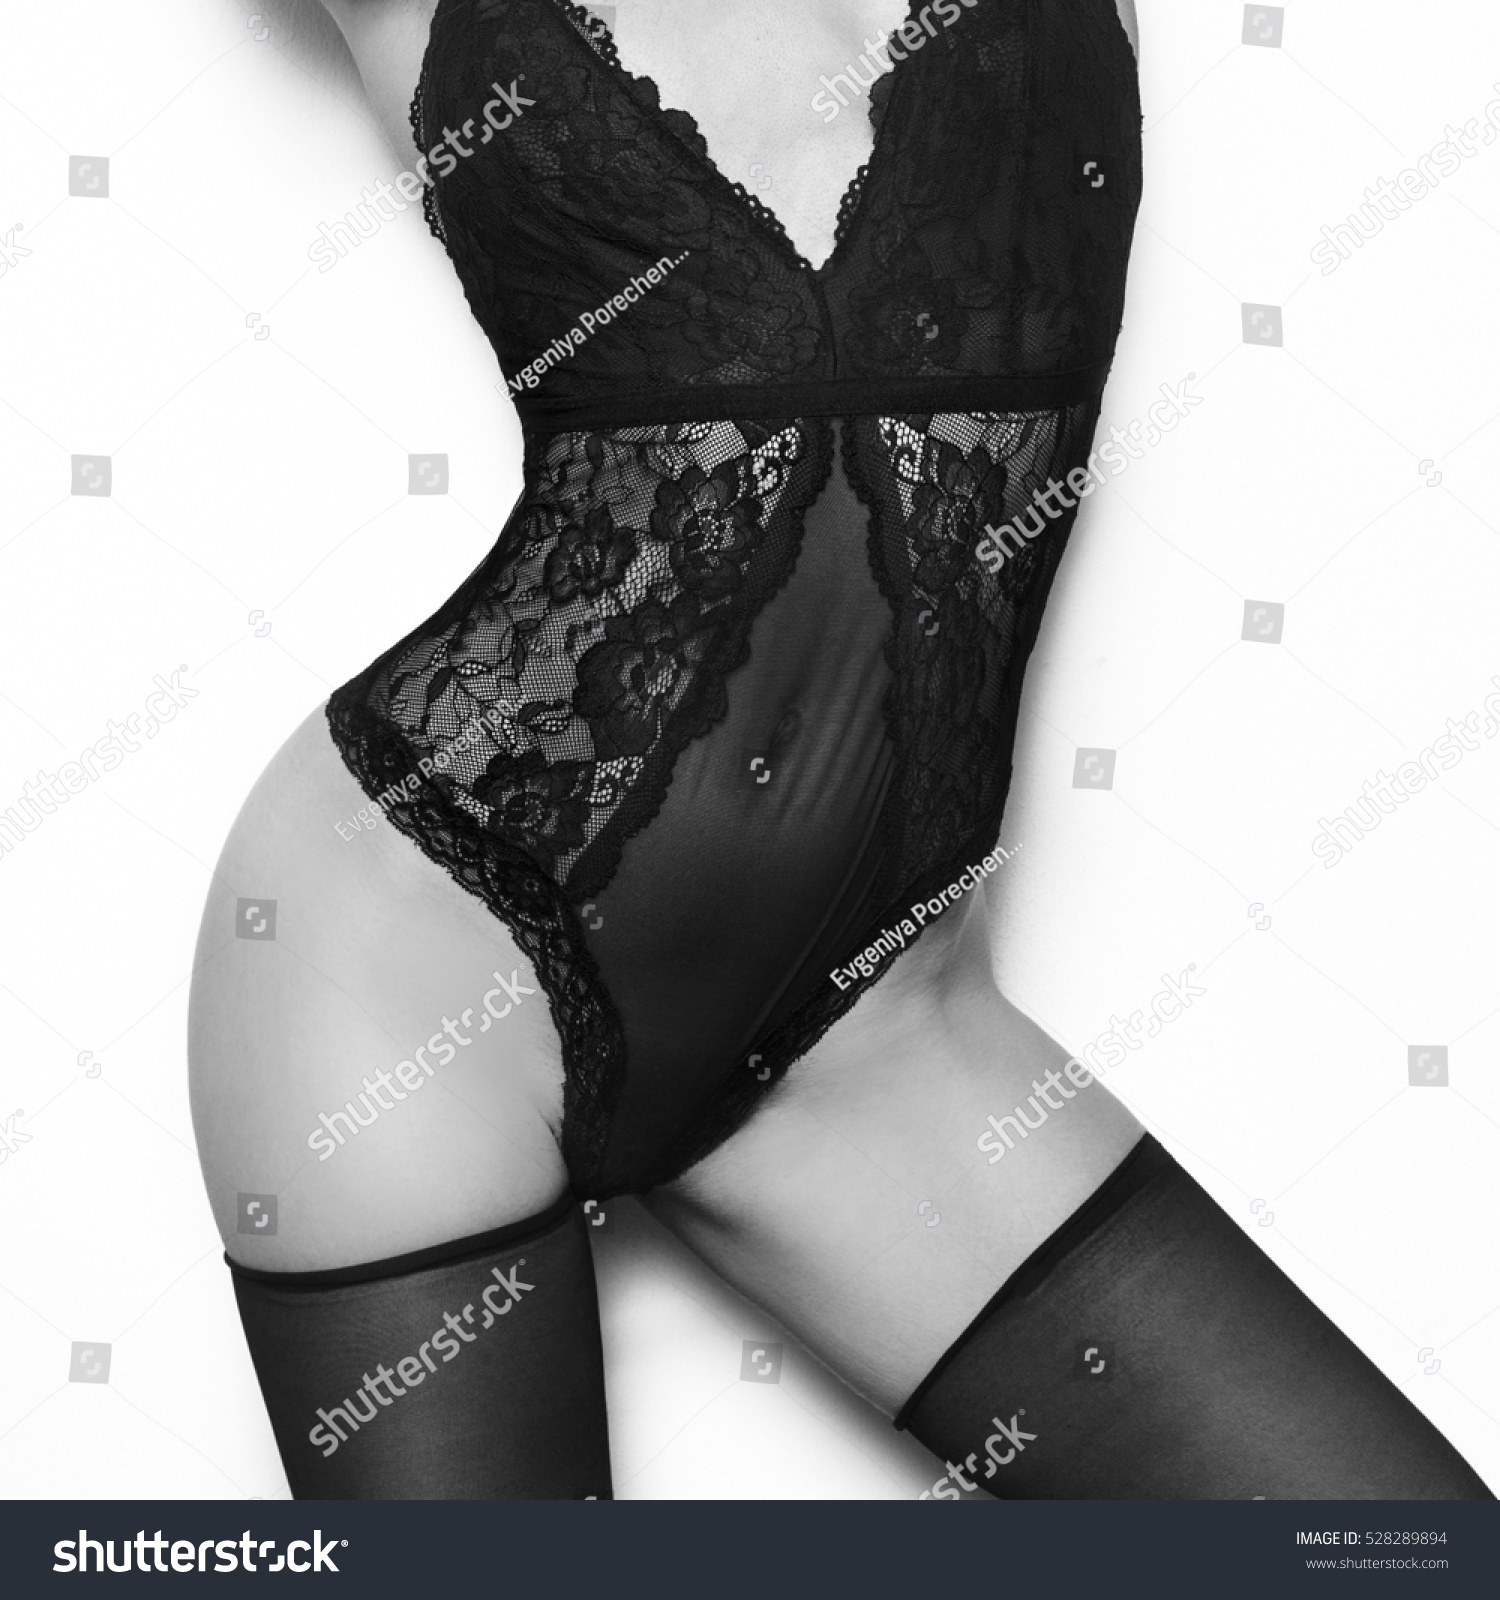 Sensual Model Lacy Black Underwear Stockings Foto Stok 528289894 Shuttersto...